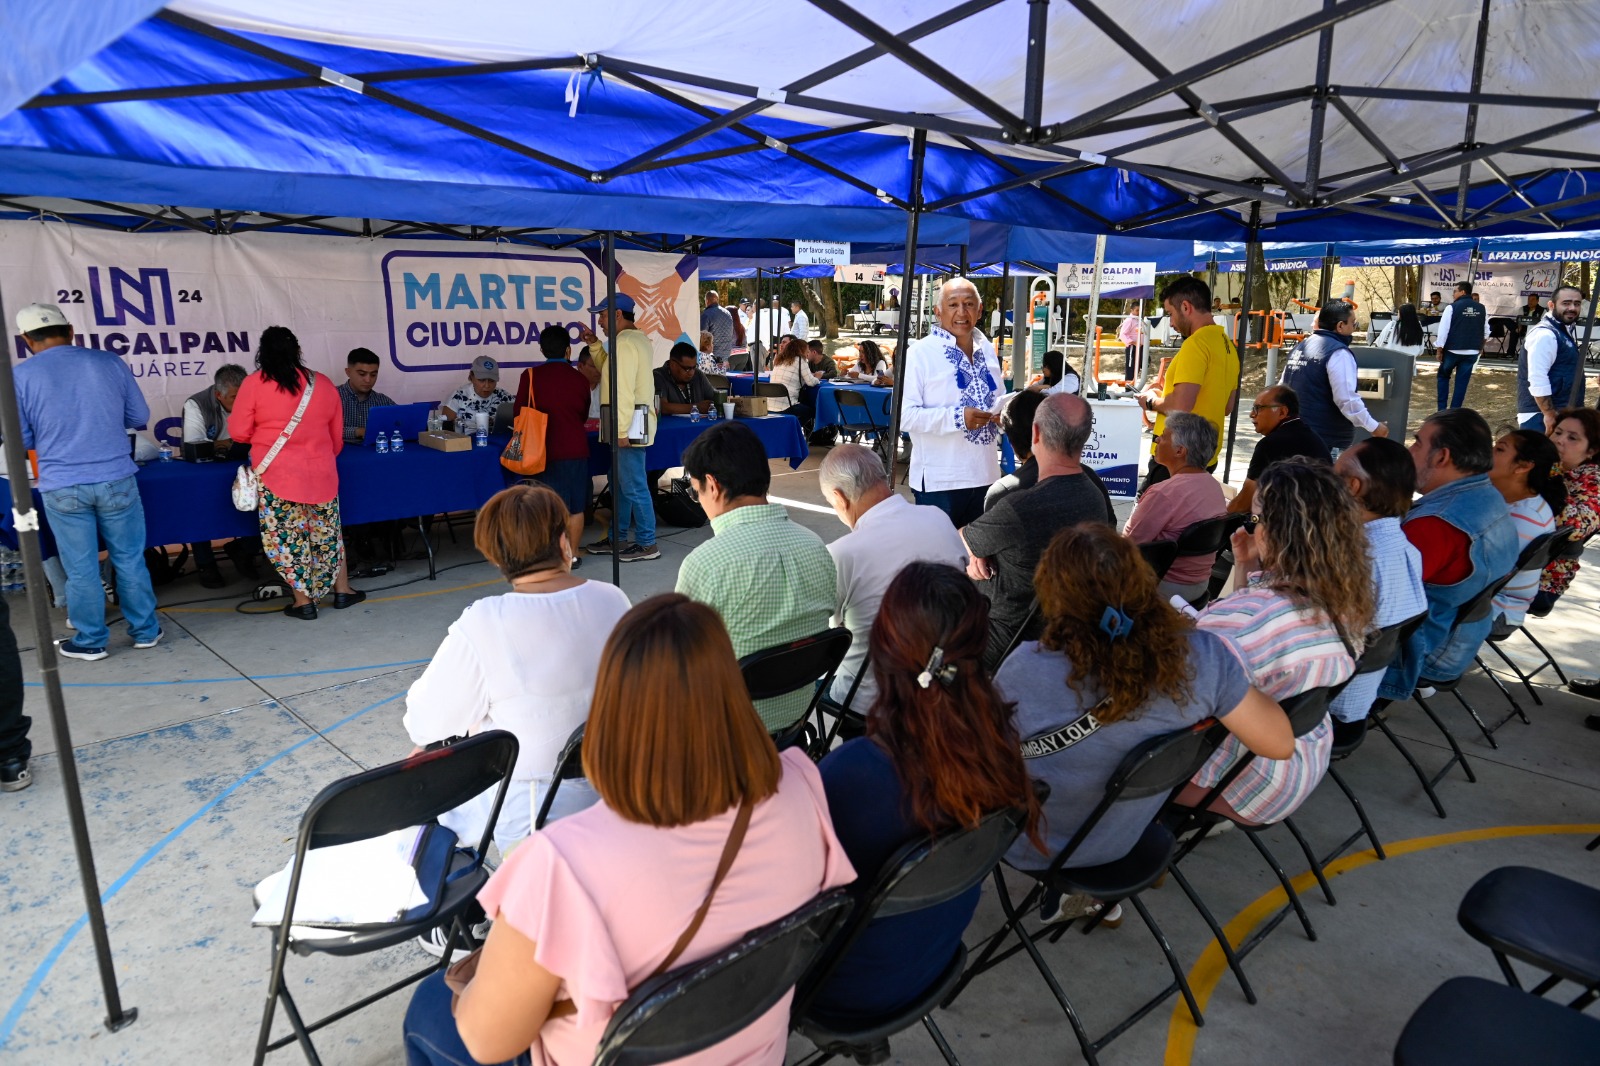 Gran asistencia en el reinicio del Martes Ciudadano en Naucalpan